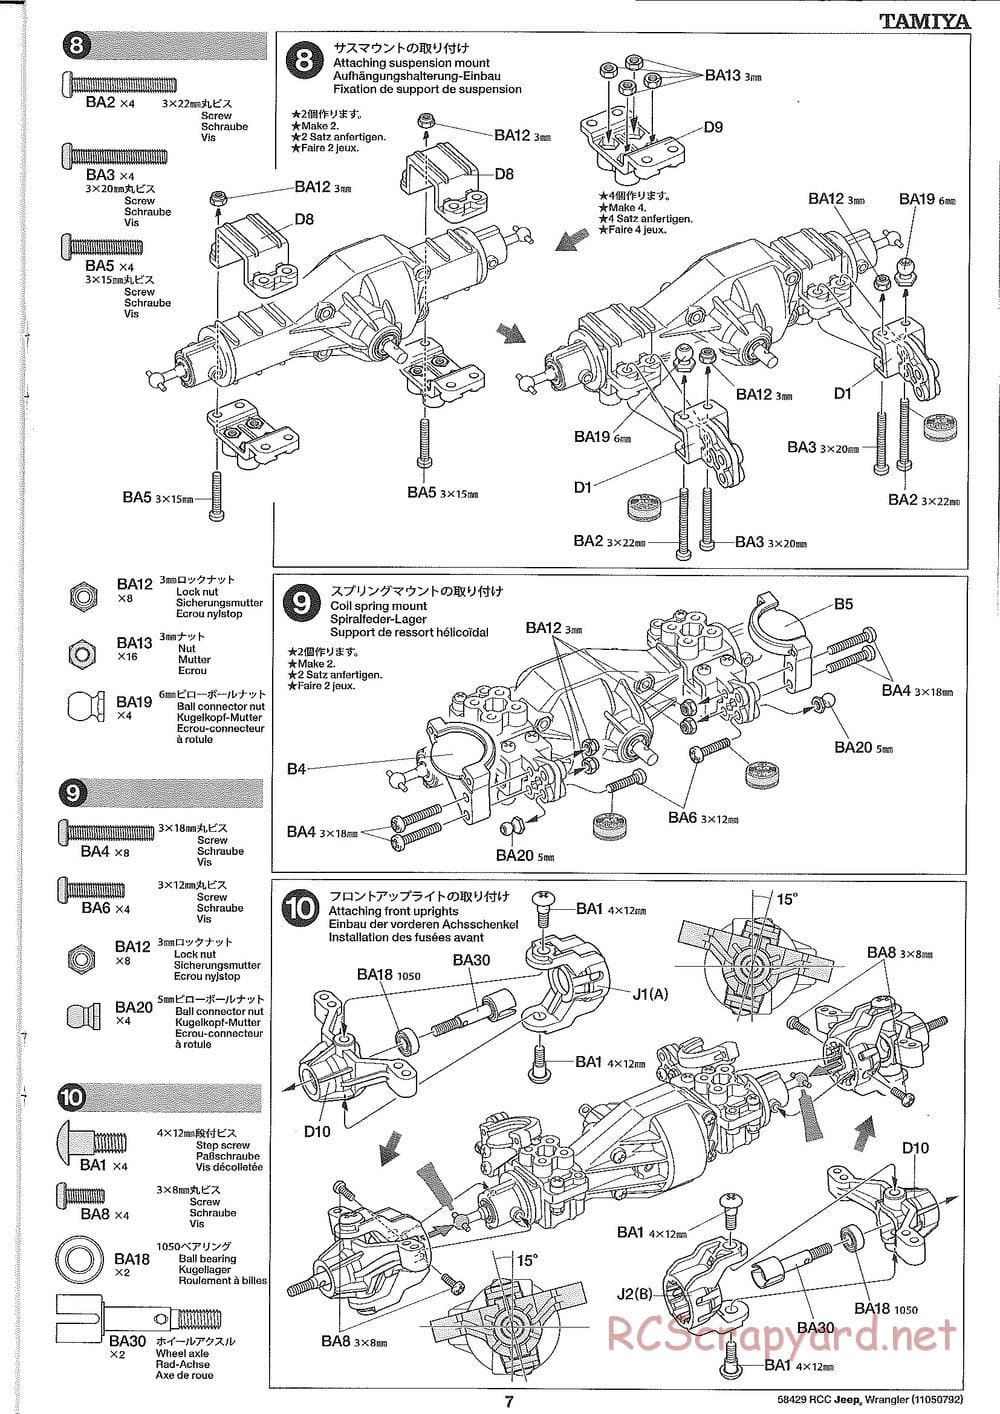 Tamiya - Jeep Wrangler - CR-01 Chassis - Manual - Page 7